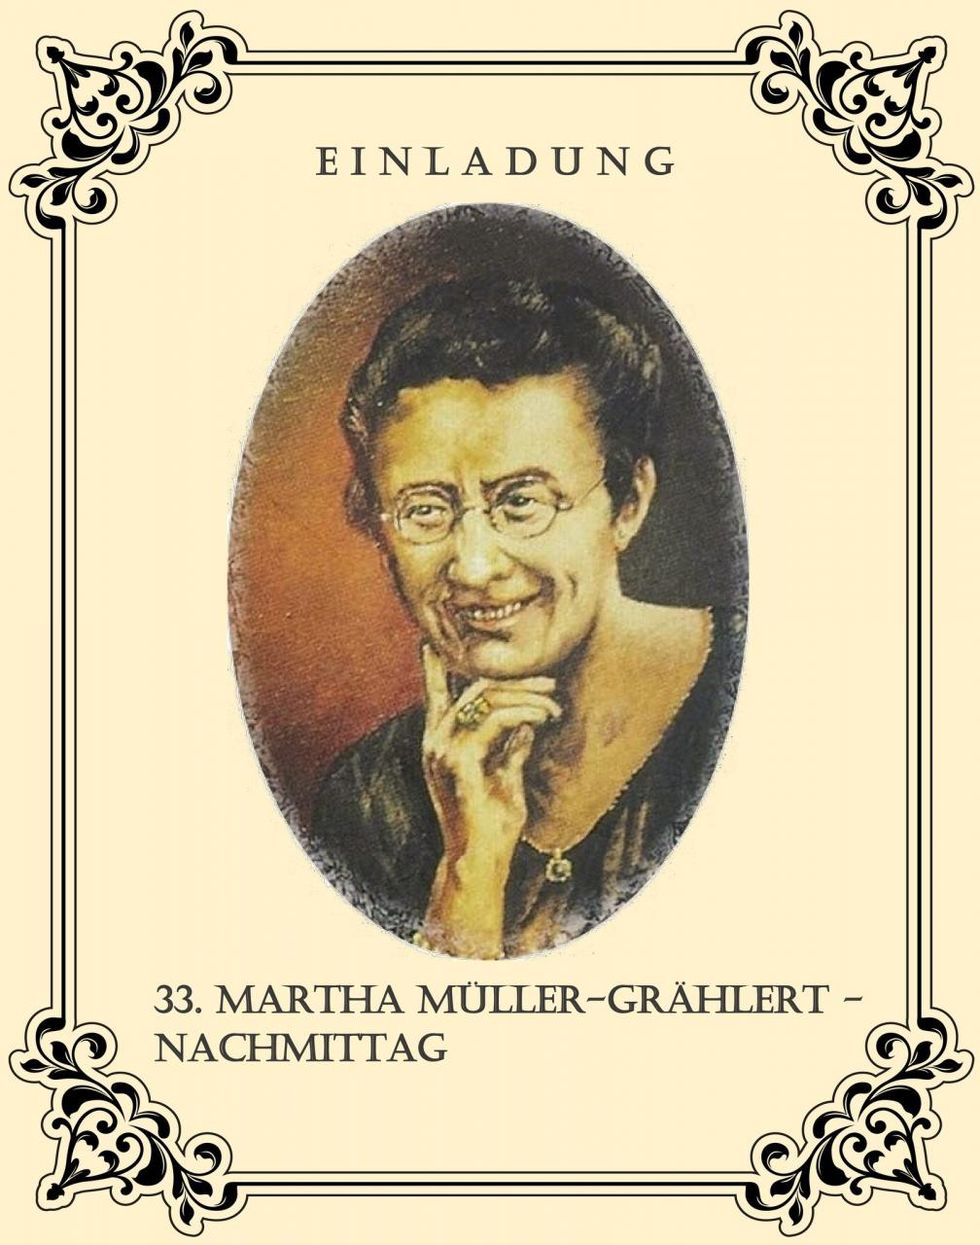 33. Martha Müller-Grählert Nachmittag